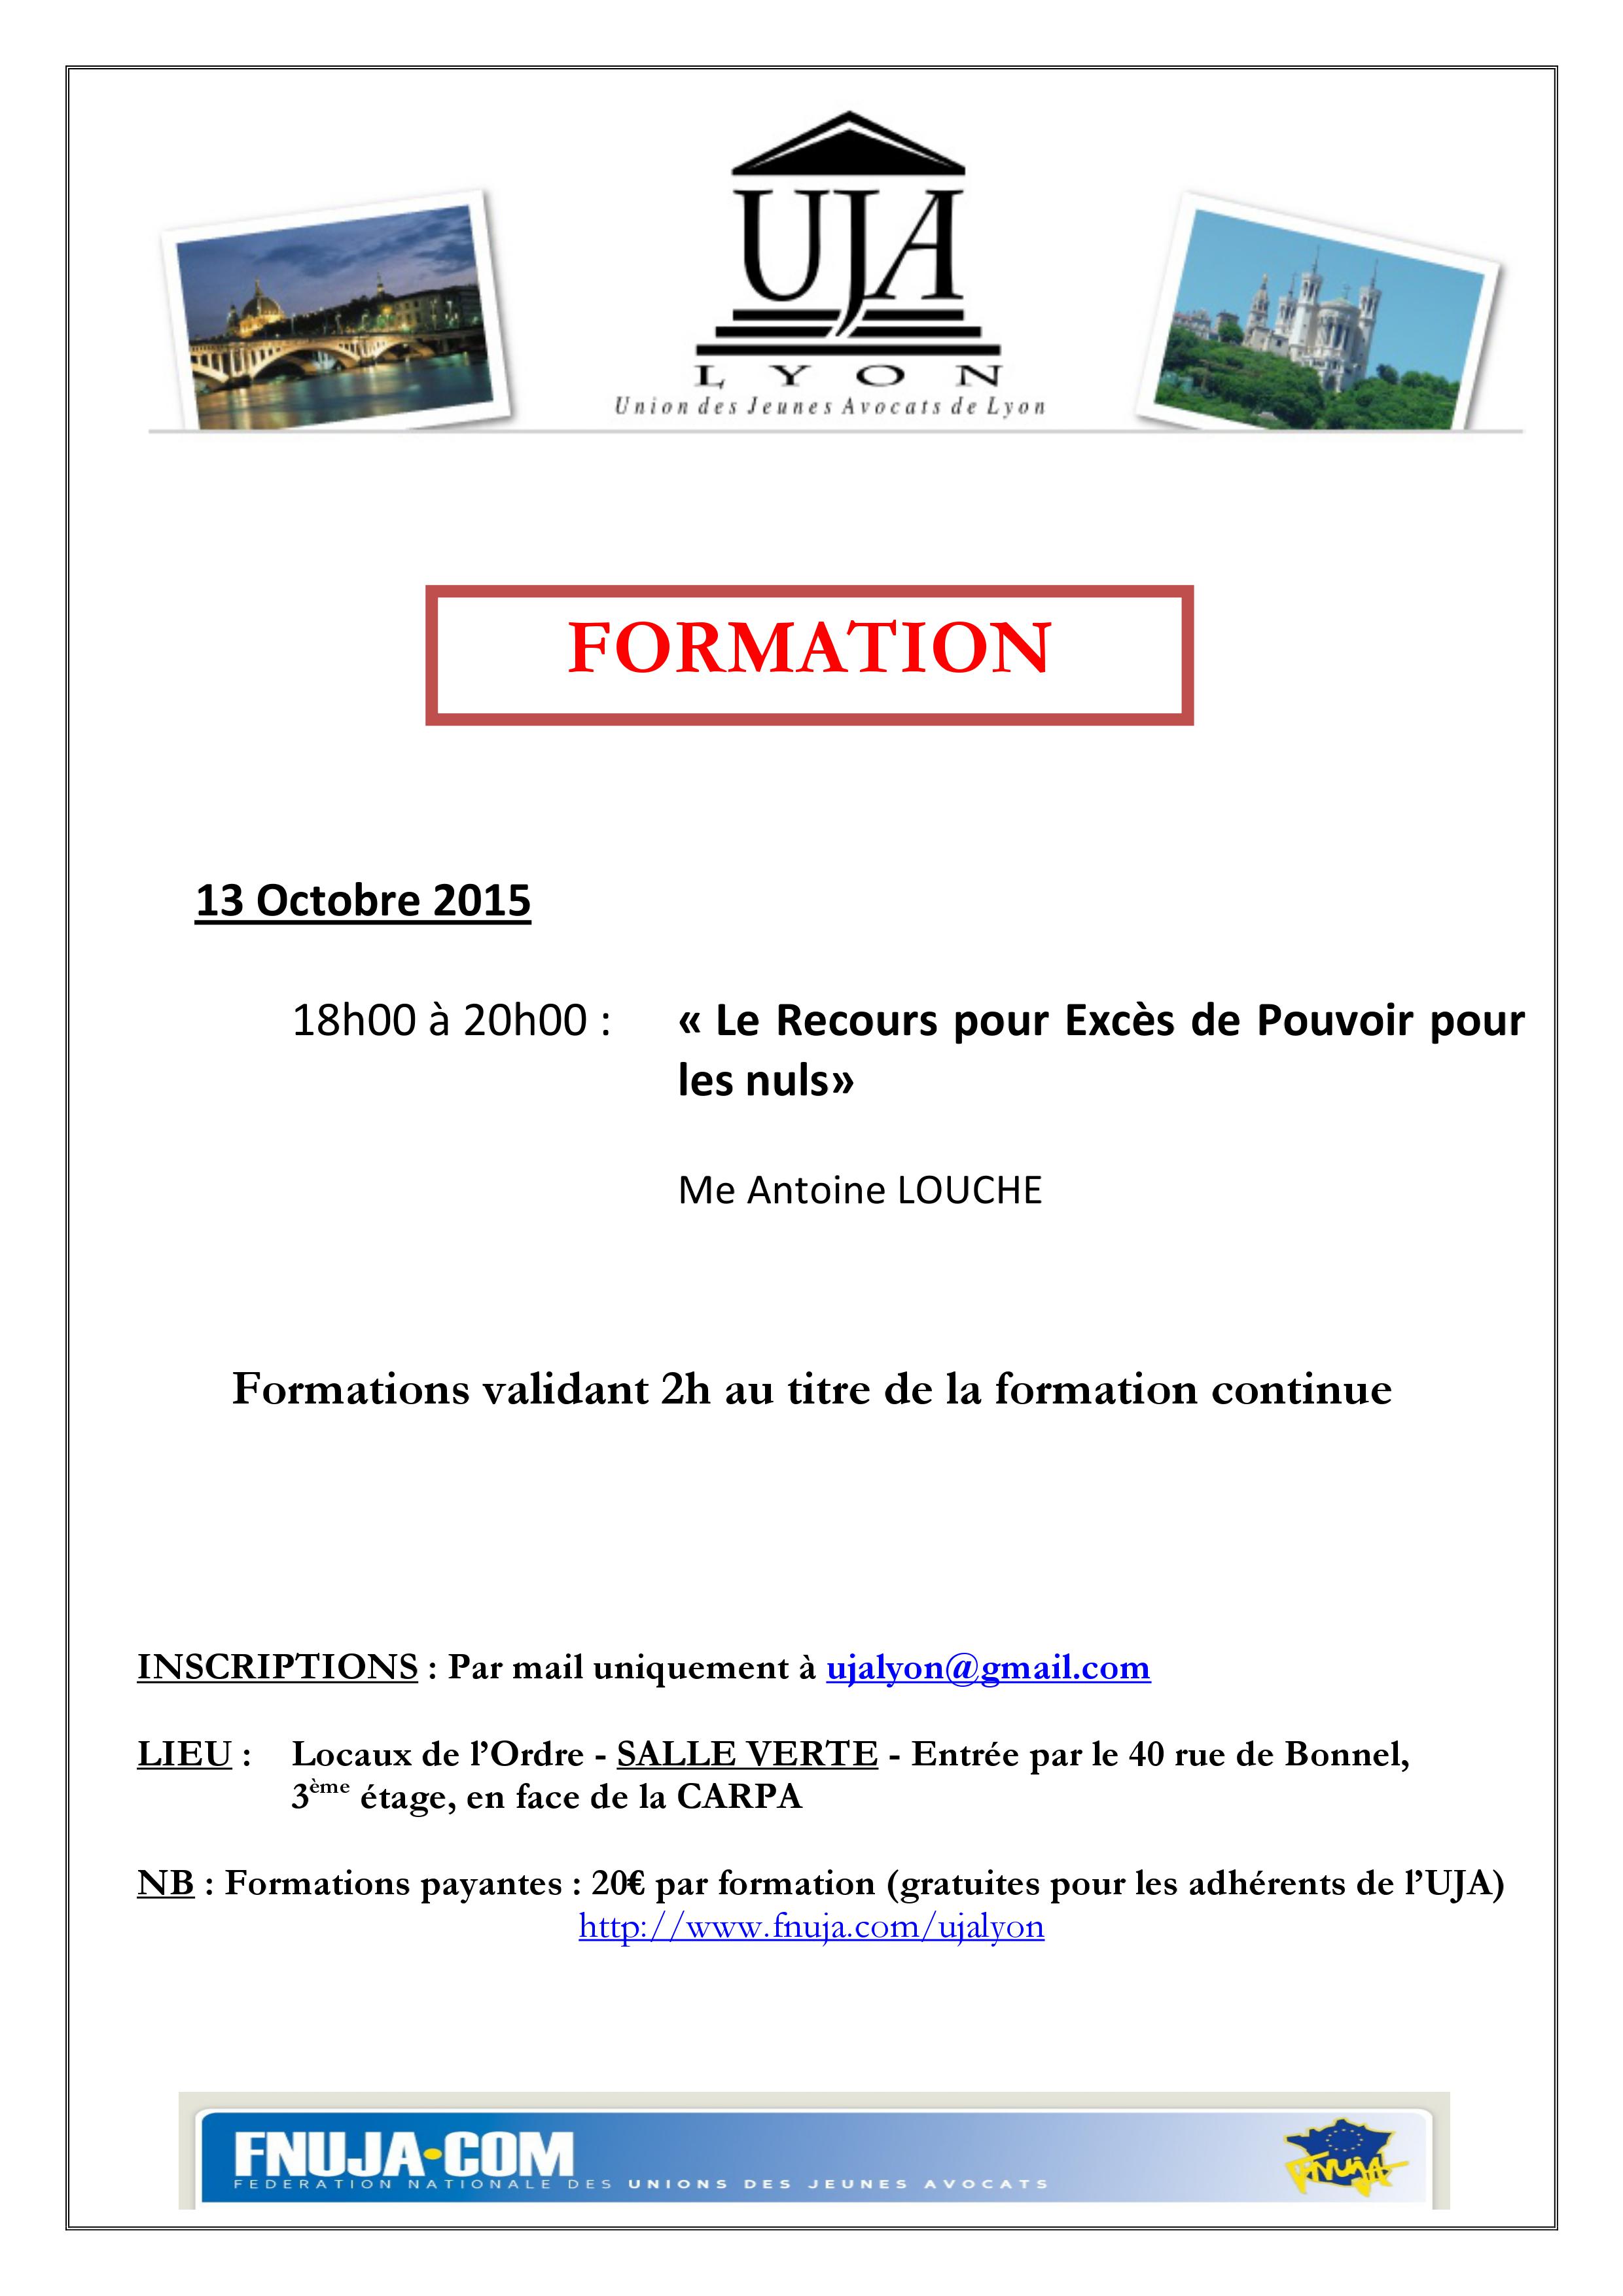 FORMATION DU 13 OCTOBRE 2015